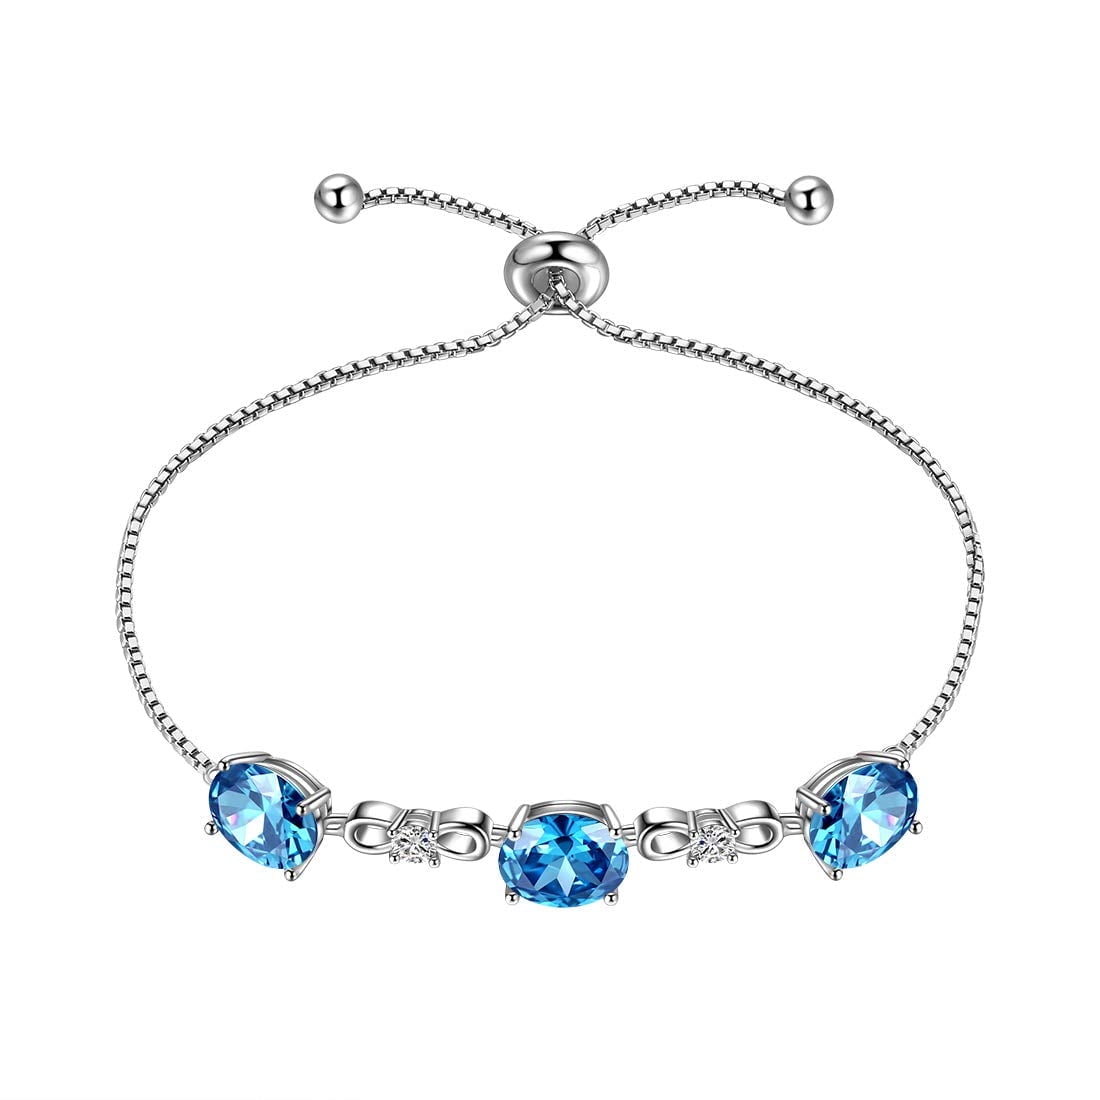 Buy Aquamarine Gemstone Bracelet, Sterling Silver, March Birthstone Bracelet,  Natural Aquamarine Bead Bracelet, Aquamarine Crystal Bracelet Online in  India - Etsy